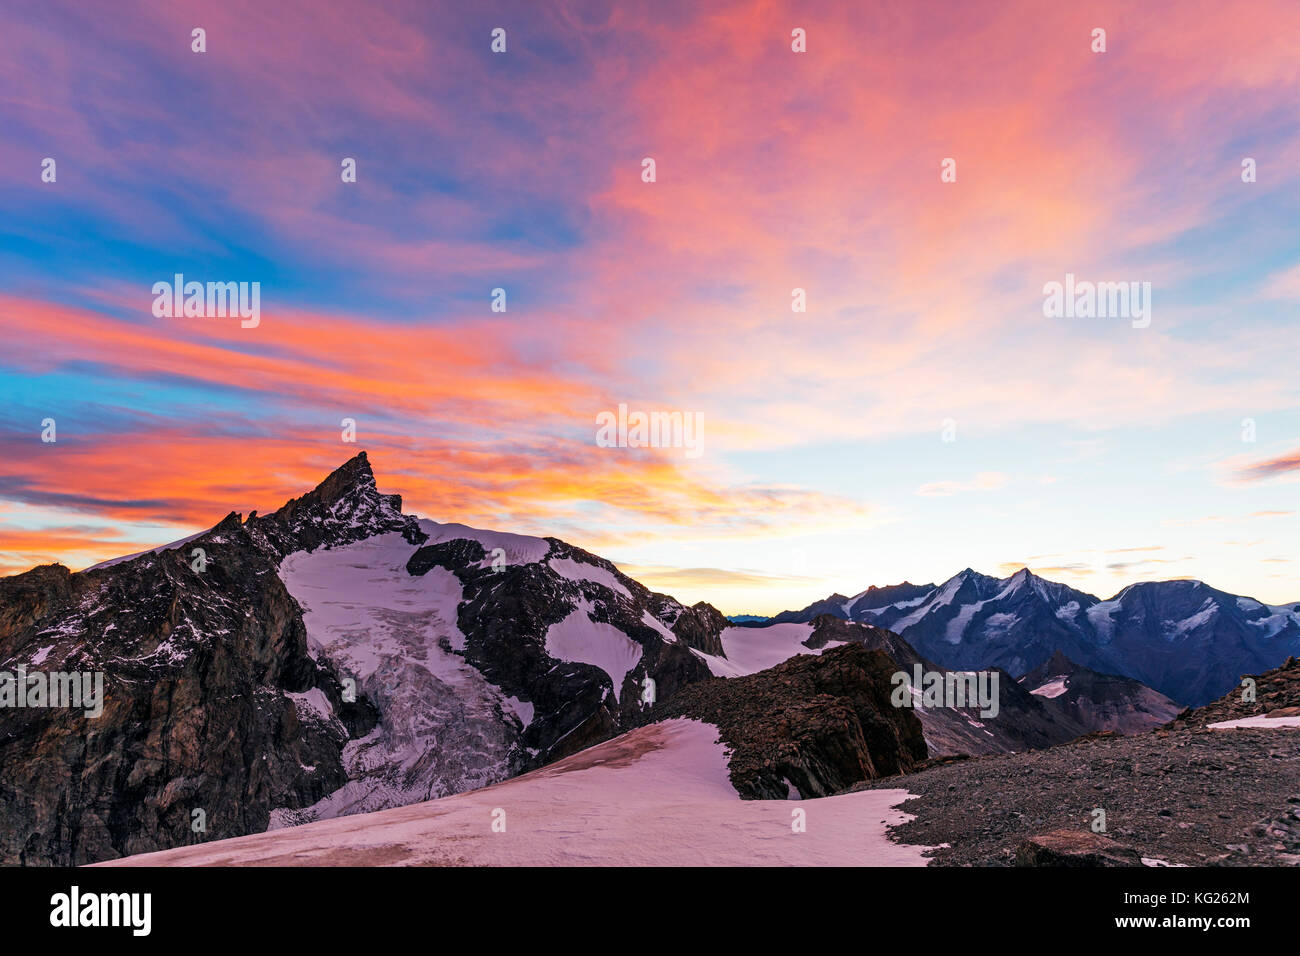 Lever du soleil sur zinalrothorn, 4421m, à partir de 4063m, l'obergabelhorn, Zermatt, Valais, Alpes suisses, Suisse, Europe Banque D'Images